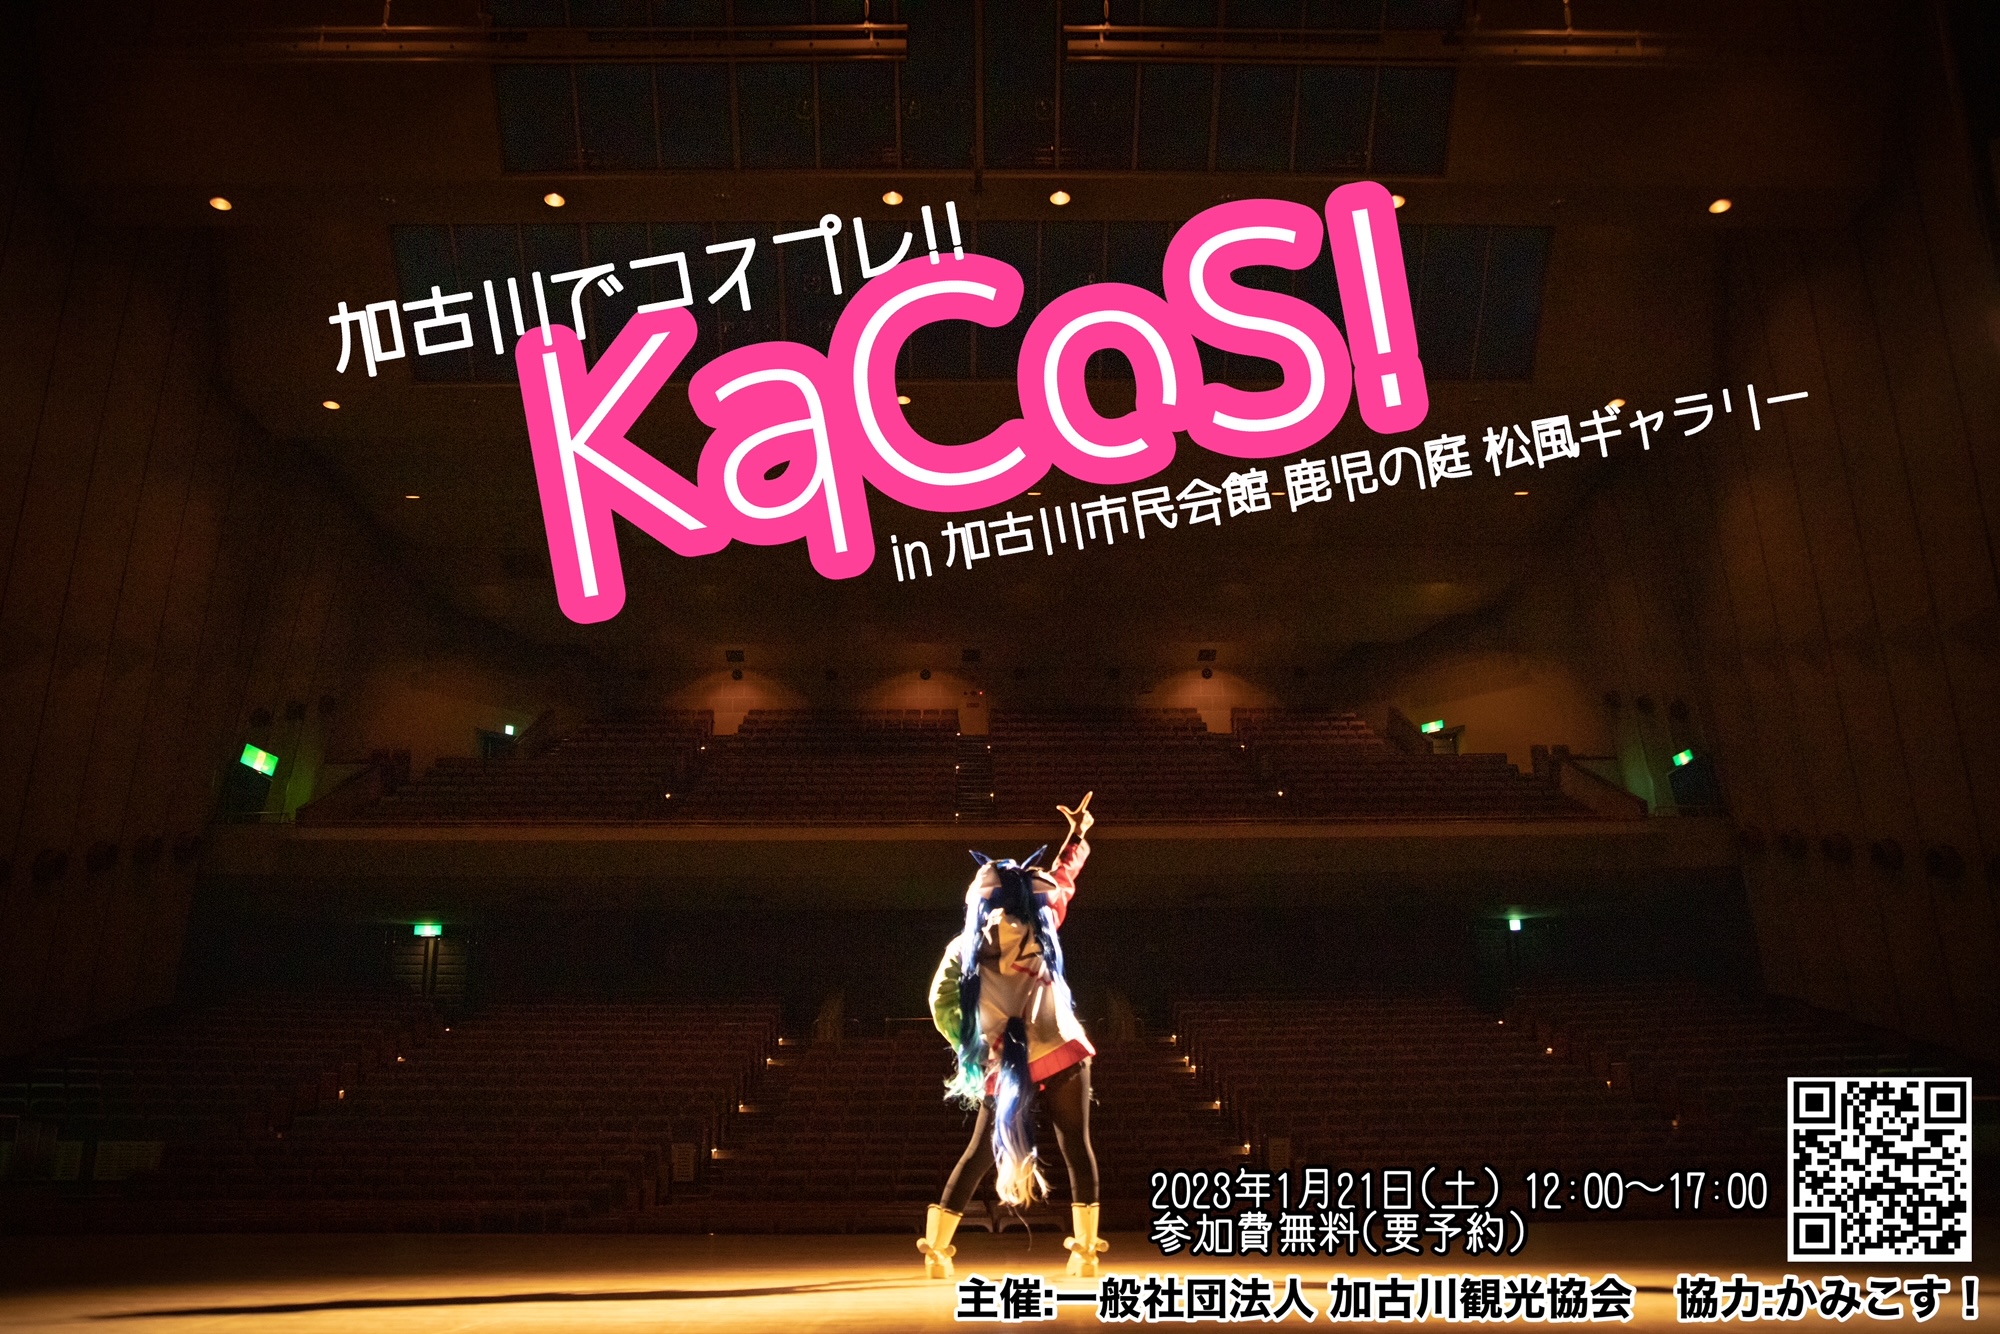 フォトセッションイベント『KaCoS!』